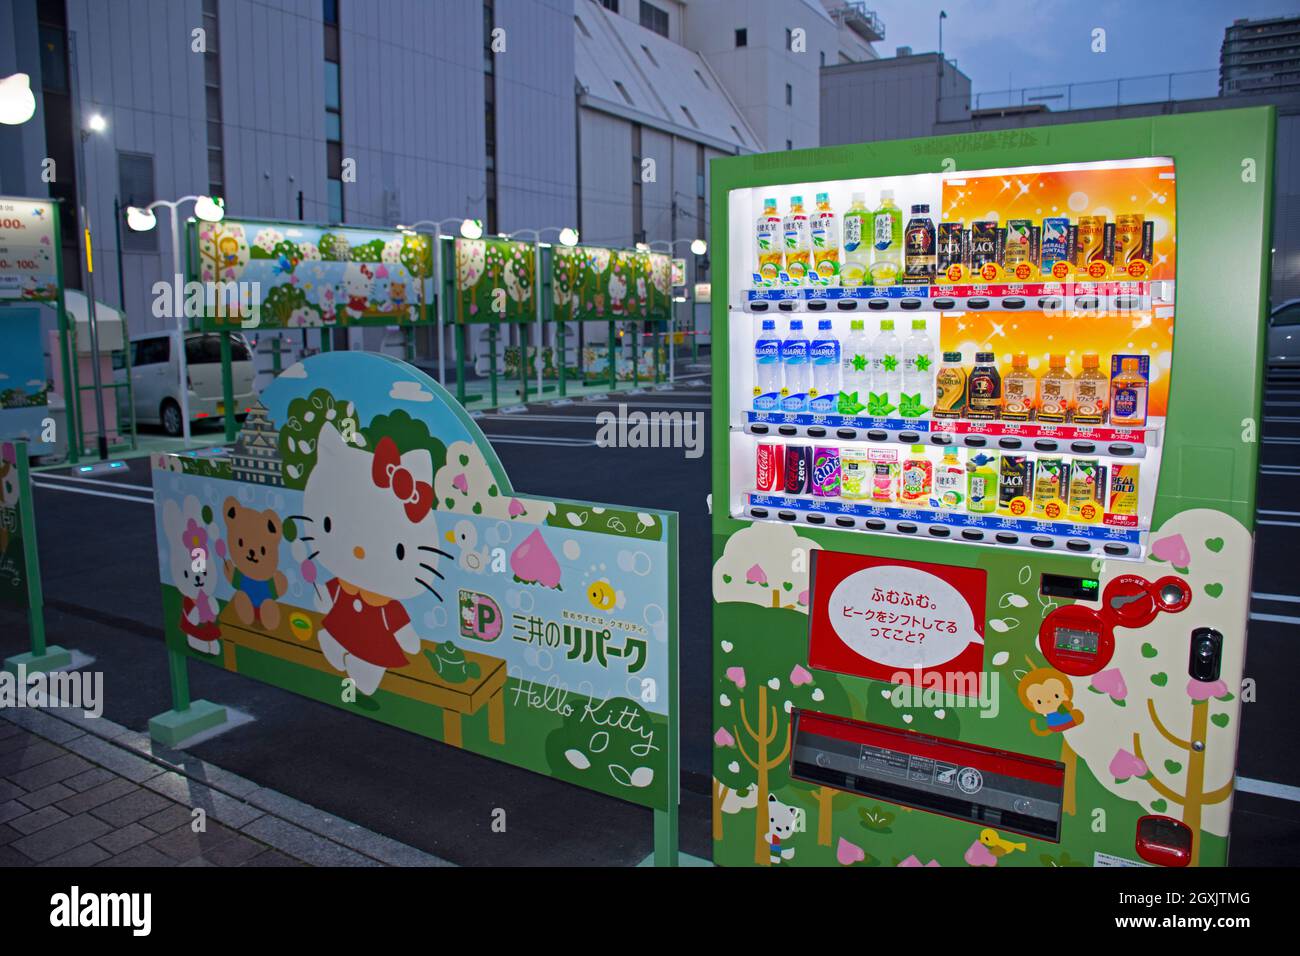 Máquina expendedora de Hello Kitty en el estacionamiento de Hello Kitty, Okayama, Japón Foto de stock